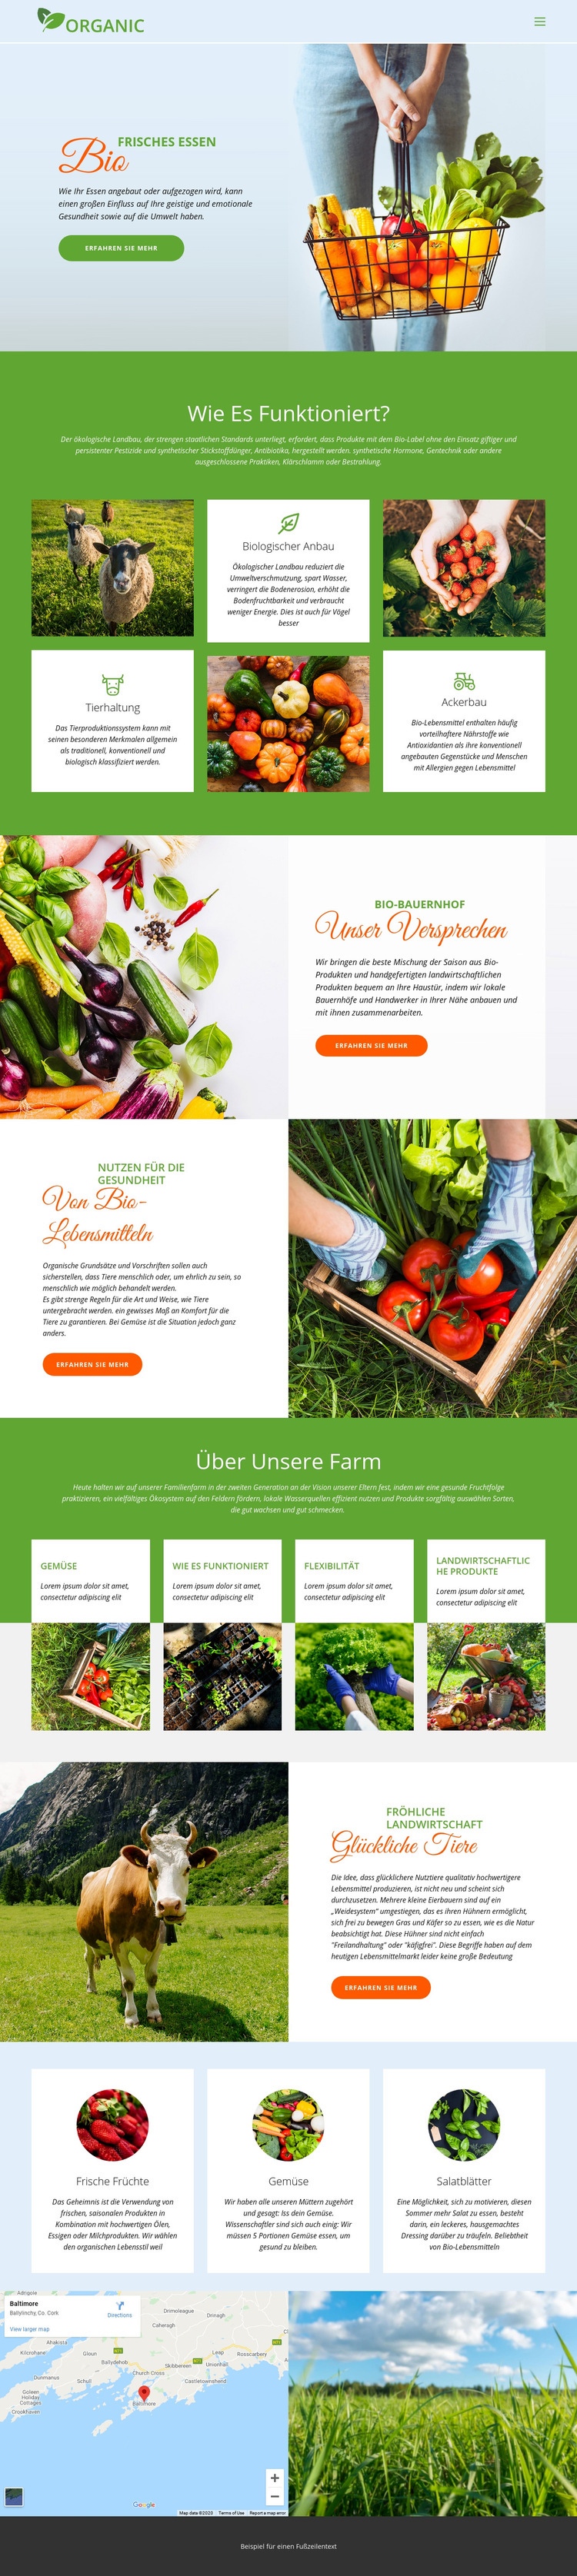 Essen Sie am besten Bio-Lebensmittel HTML-Vorlage